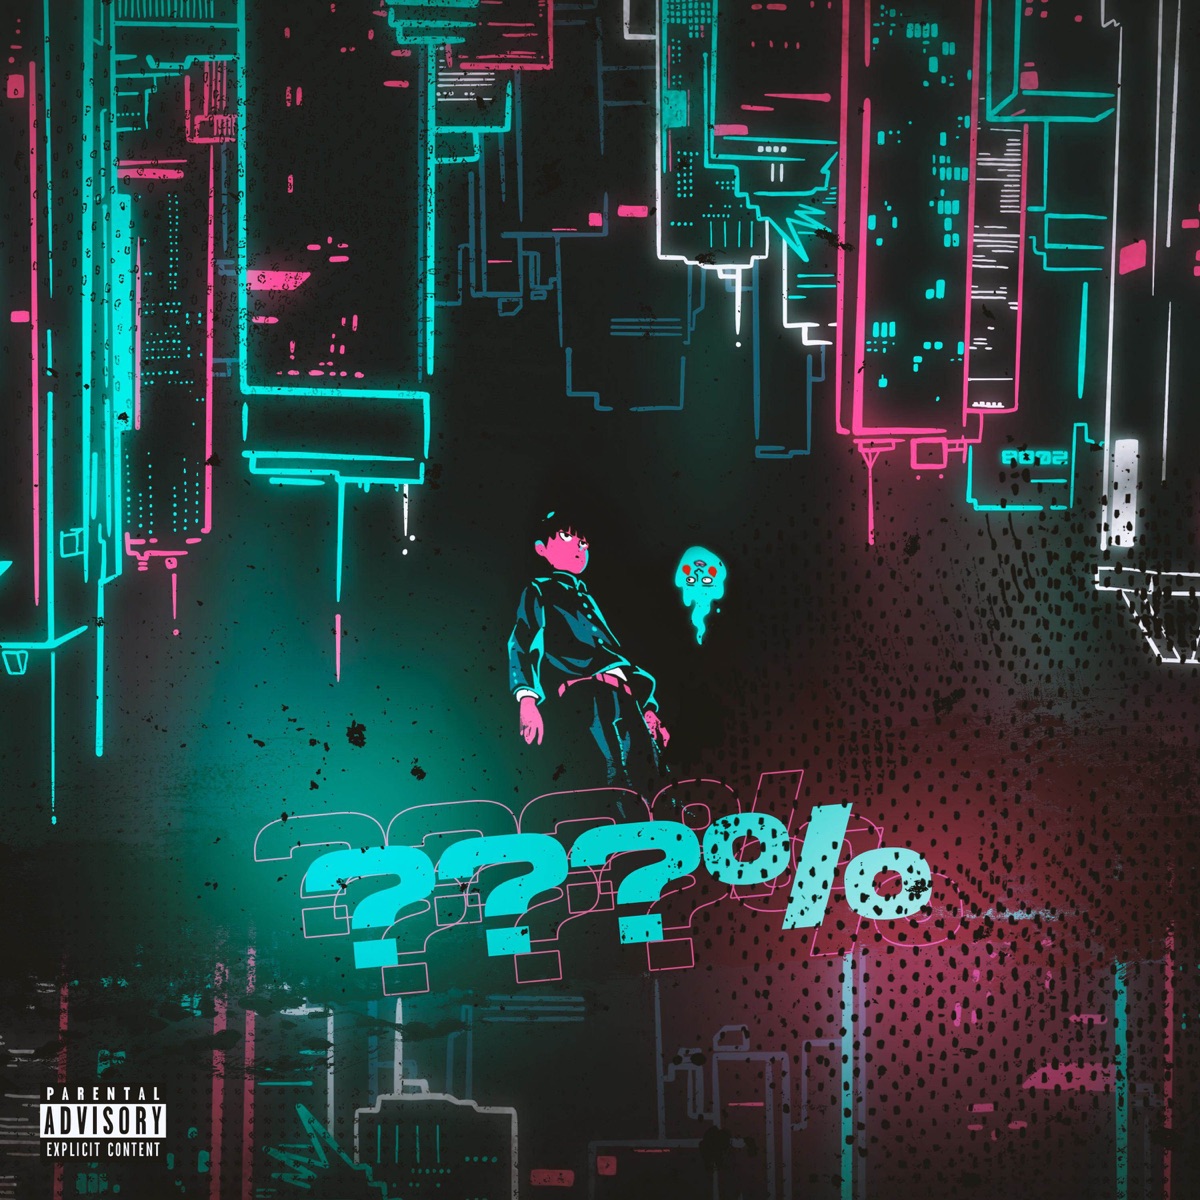 Arte - Single - Album by Enygma Rapper - Apple Music